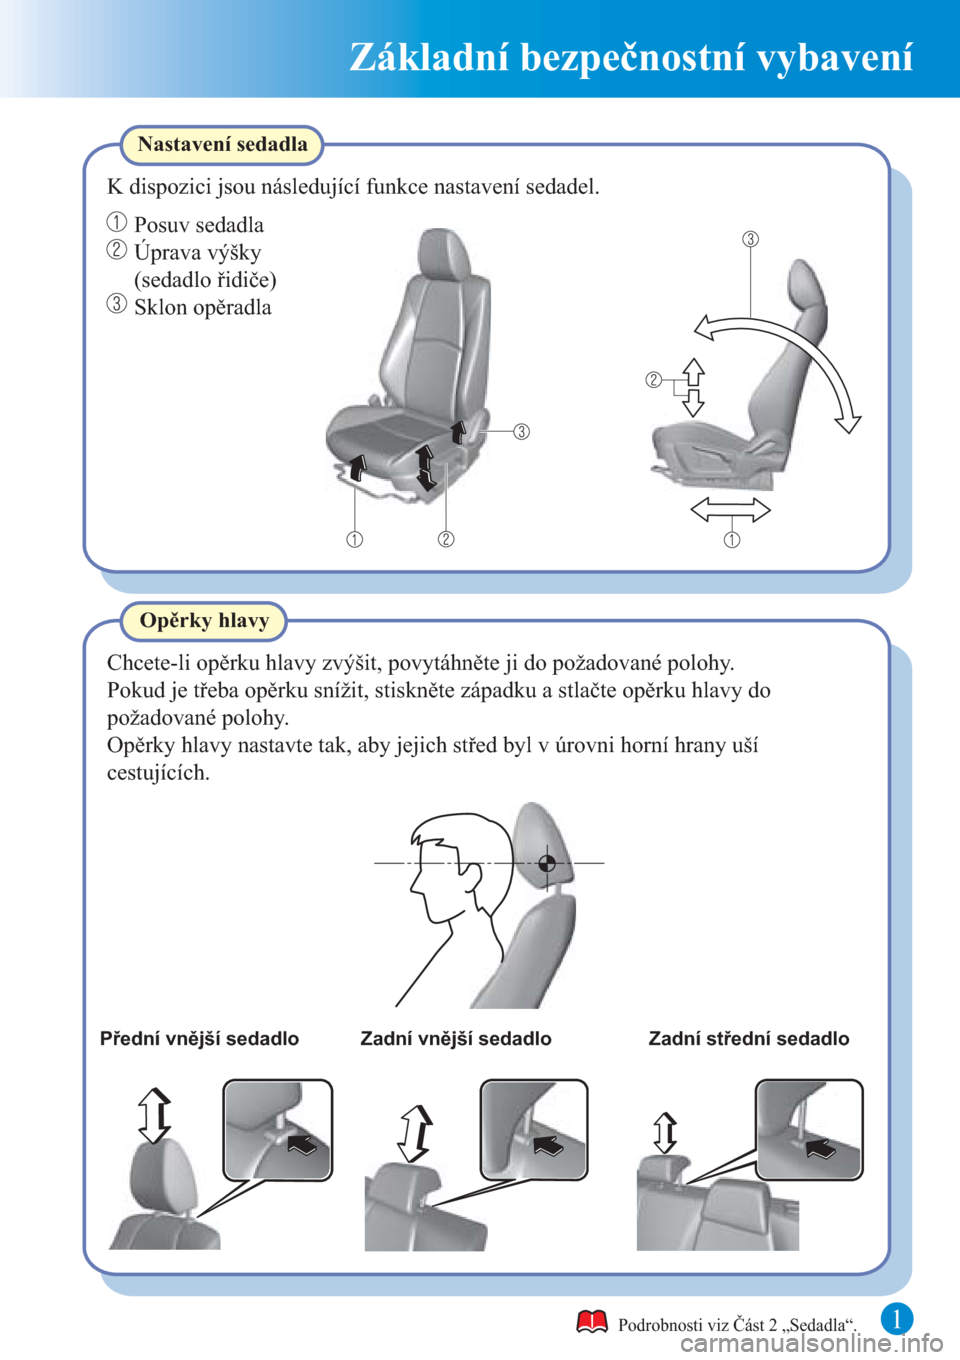 MAZDA MODEL CX-3 2016  Rychlý průvodce (in Czech)  1
Základní bezpečnostní vybavení
Přední vnější sedadlo Zadní vnější sedadlo Zadní střední sedadlo
Chcete-li opěrku hlavy zvýšit, povytáhněte ji do požadované polohy.
Opěrky hl